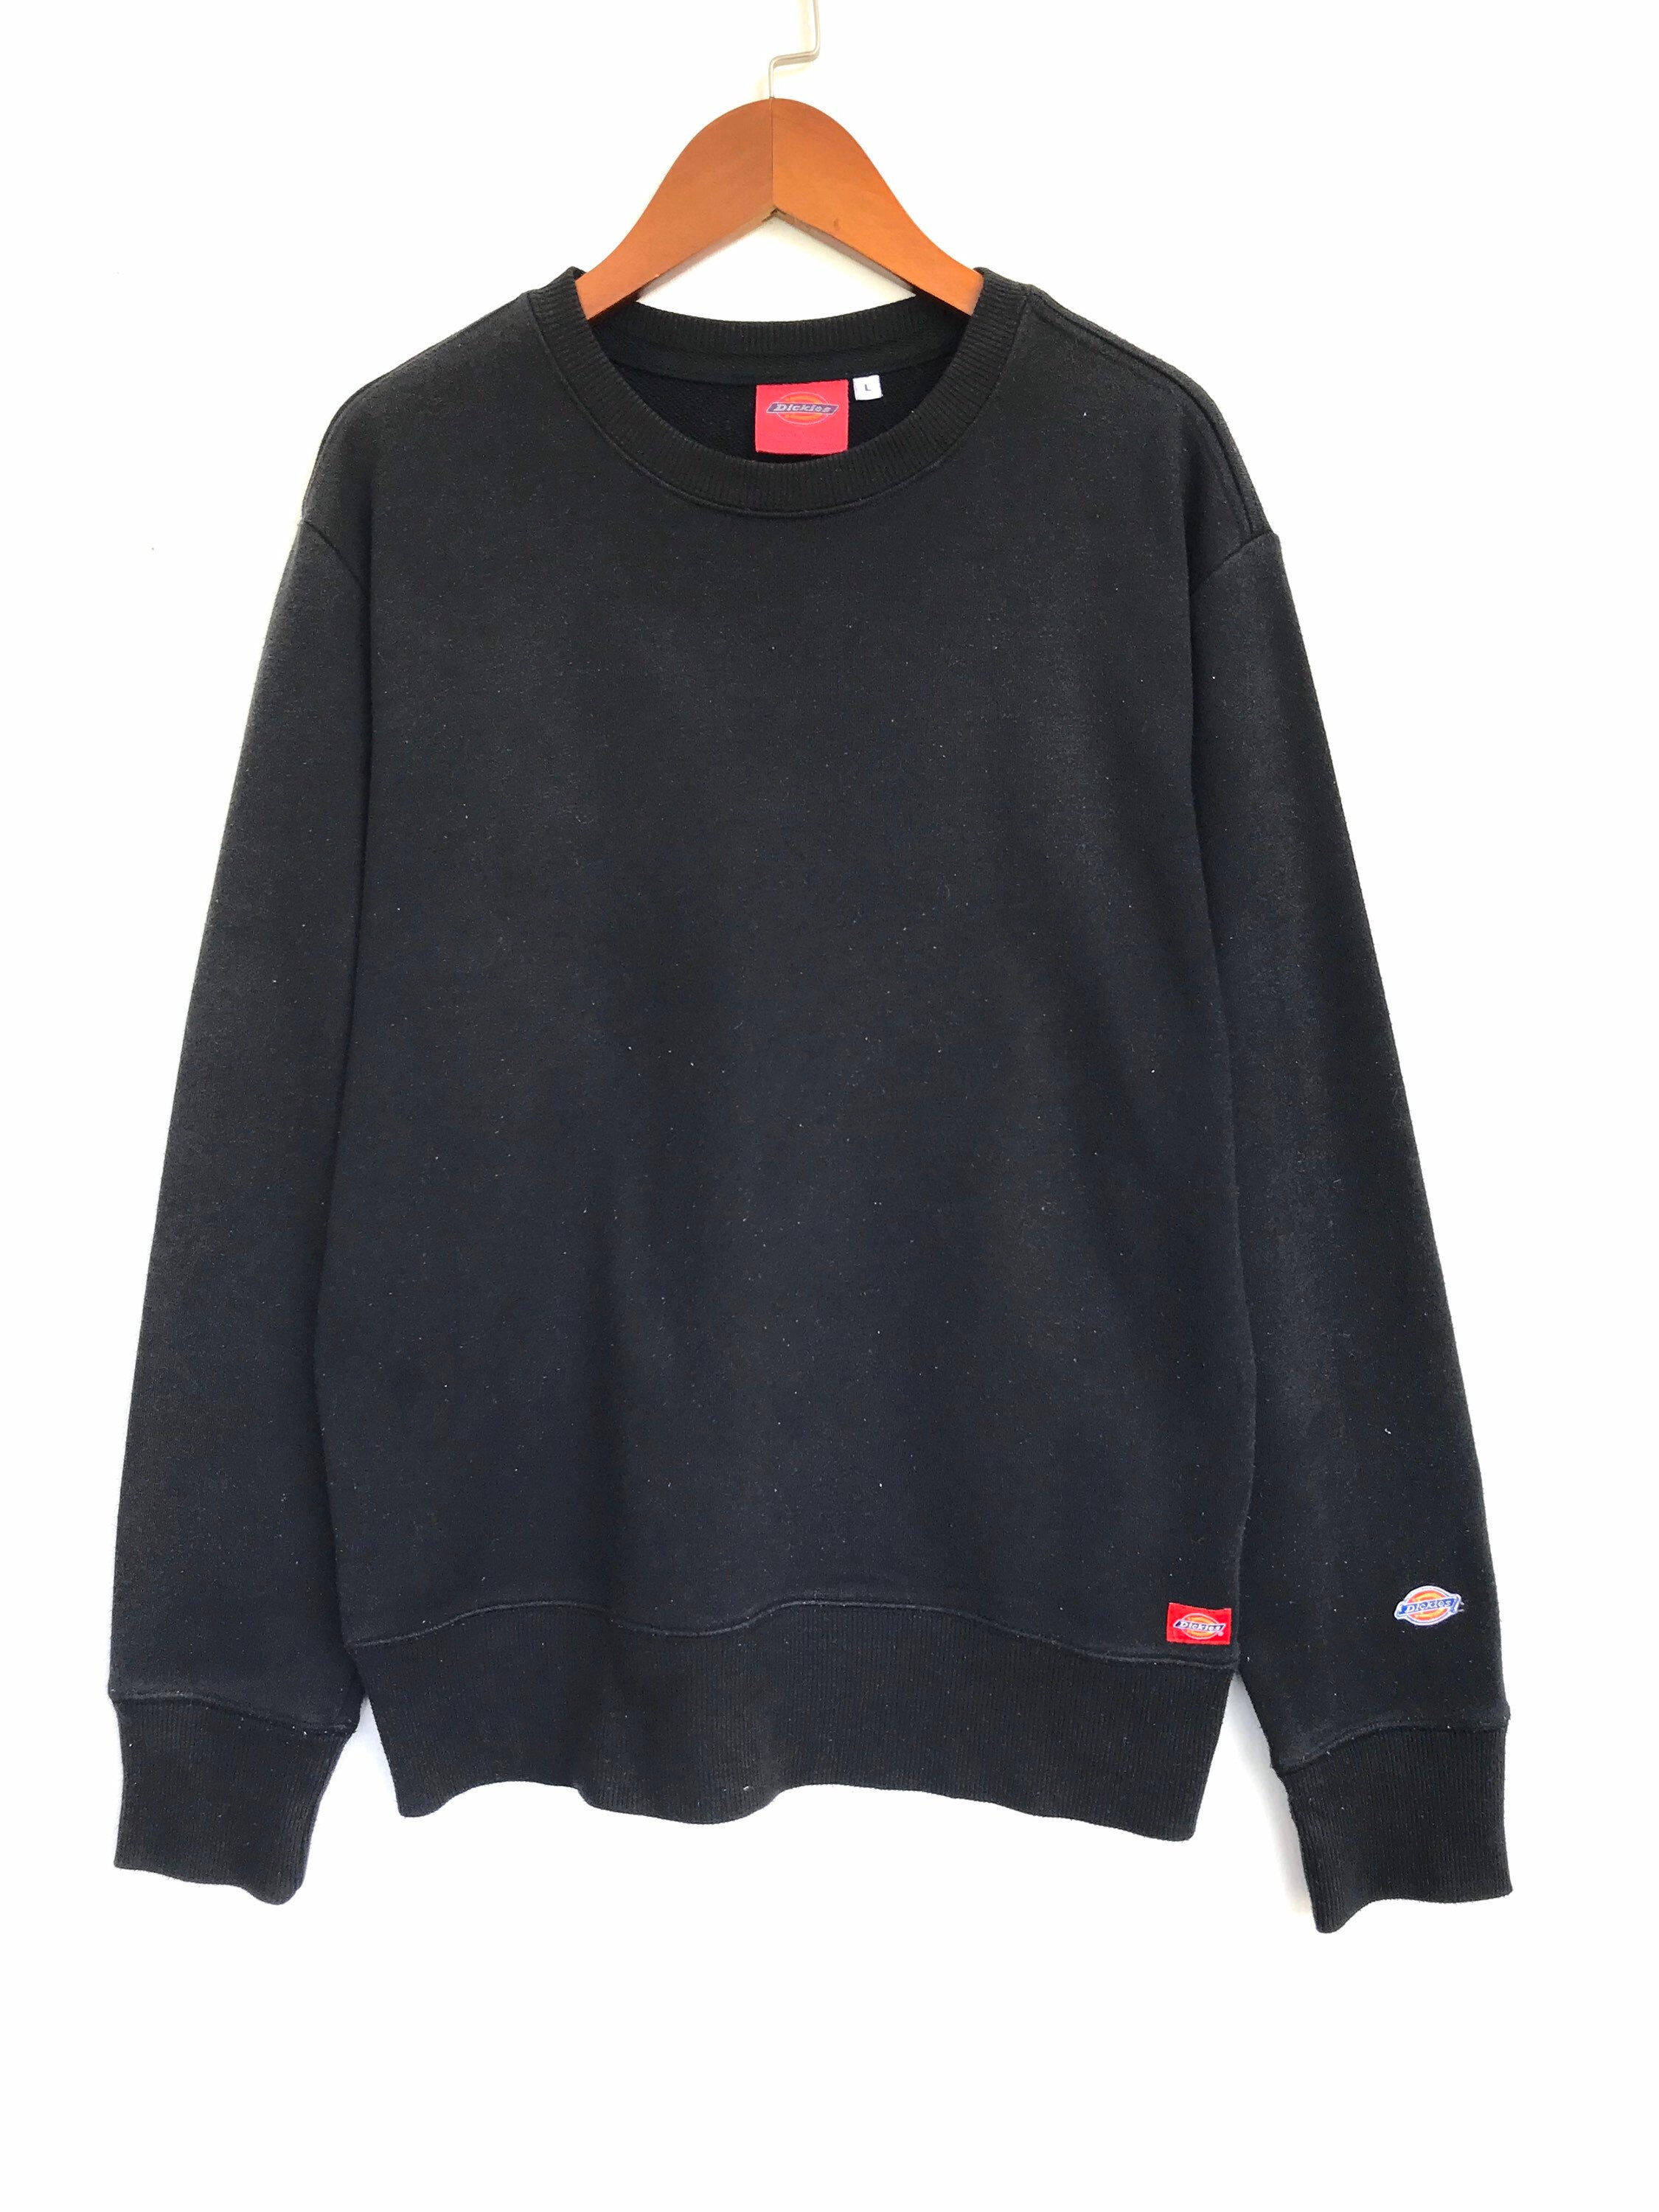 Vintage Adult Sweater Dickies Black Plaid Sweatshirt Large / | Etsy